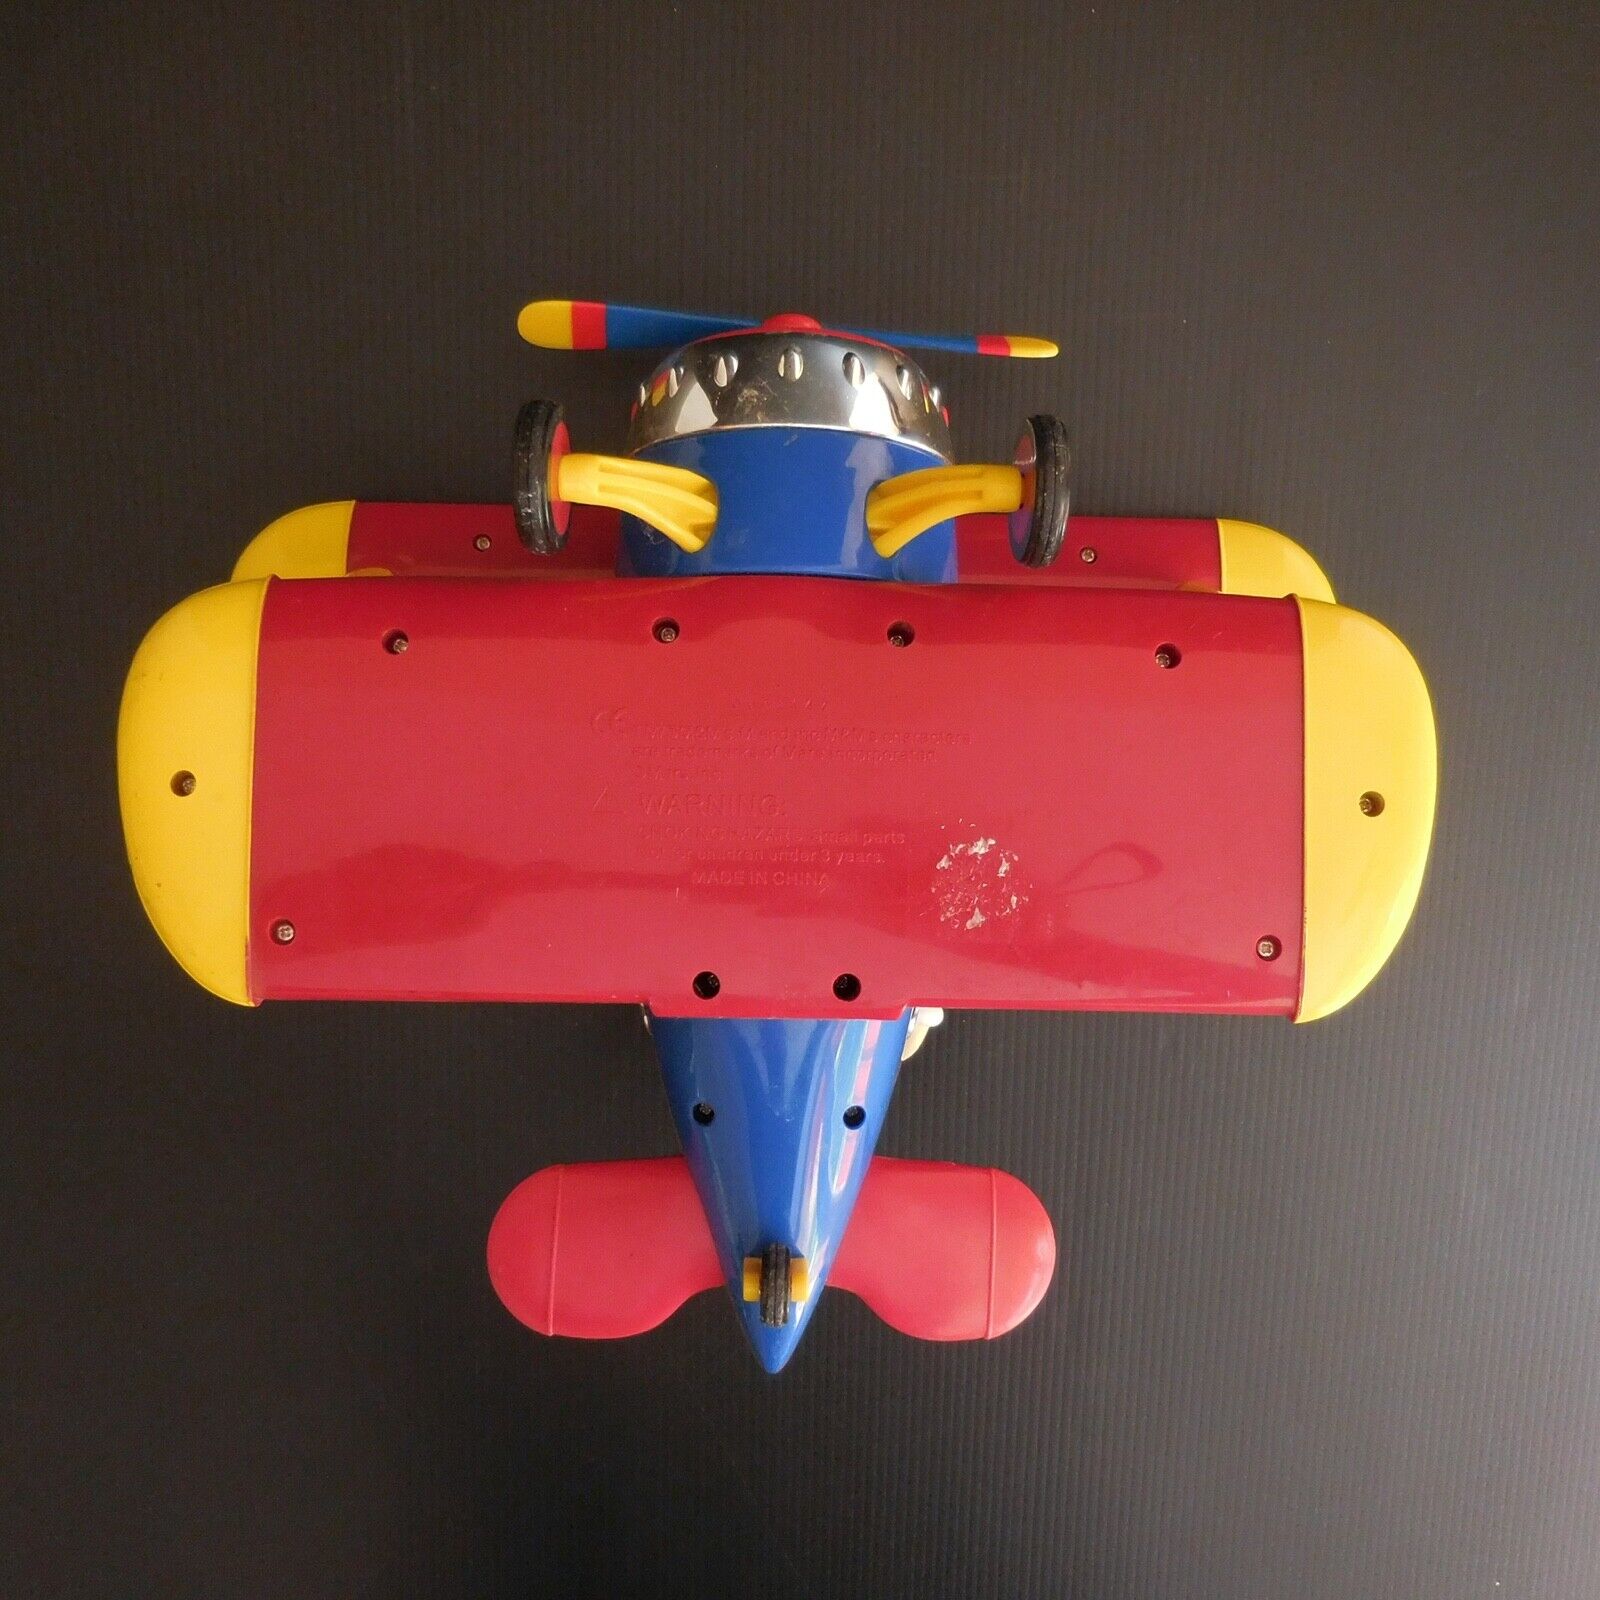 Details zu  Flugzeug Choking Hazard Tm M&m ’S Mars Inc USA Spielzeug Vintage Sammlung N5703 Niedriger Preis